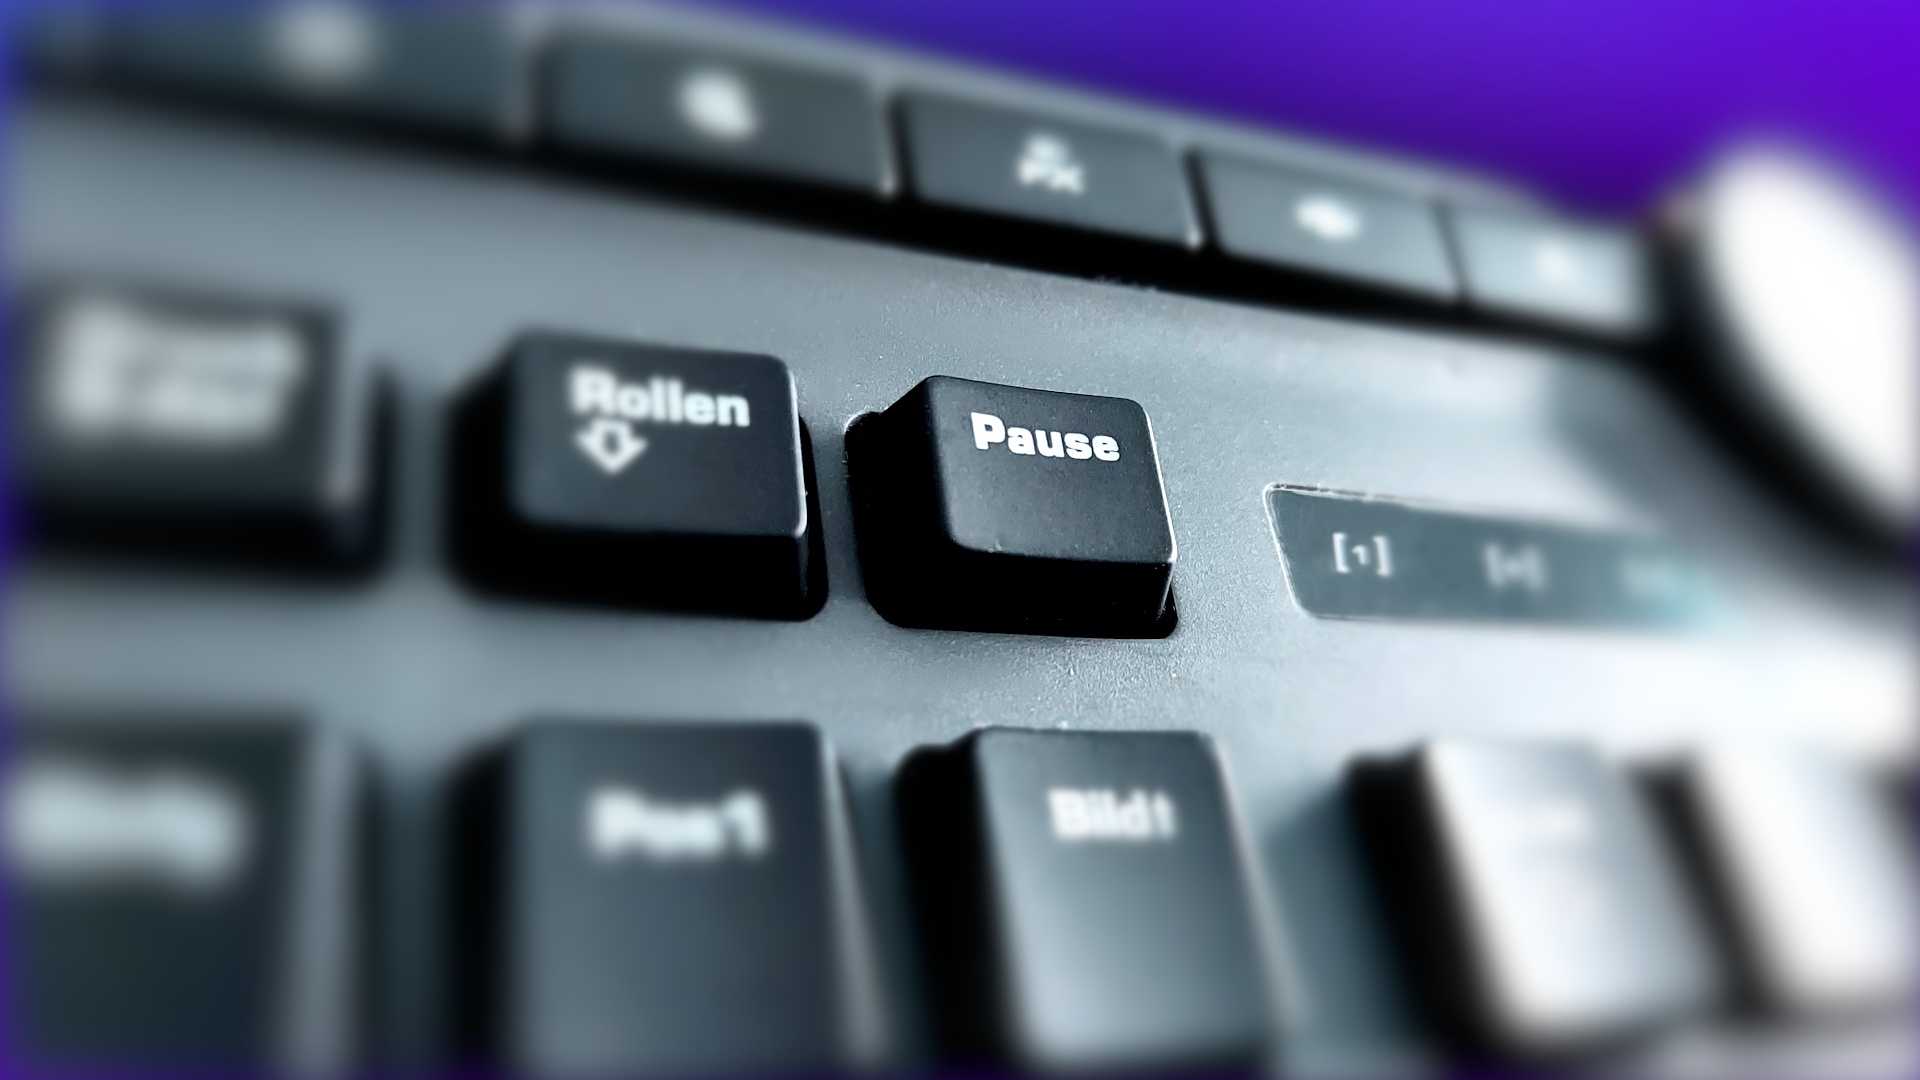 #Es gibt eine Taste auf eurer Tastatur, die ihr bestimmt nie genutzt habt: Die überraschende Erklärung für die Pause-Taste